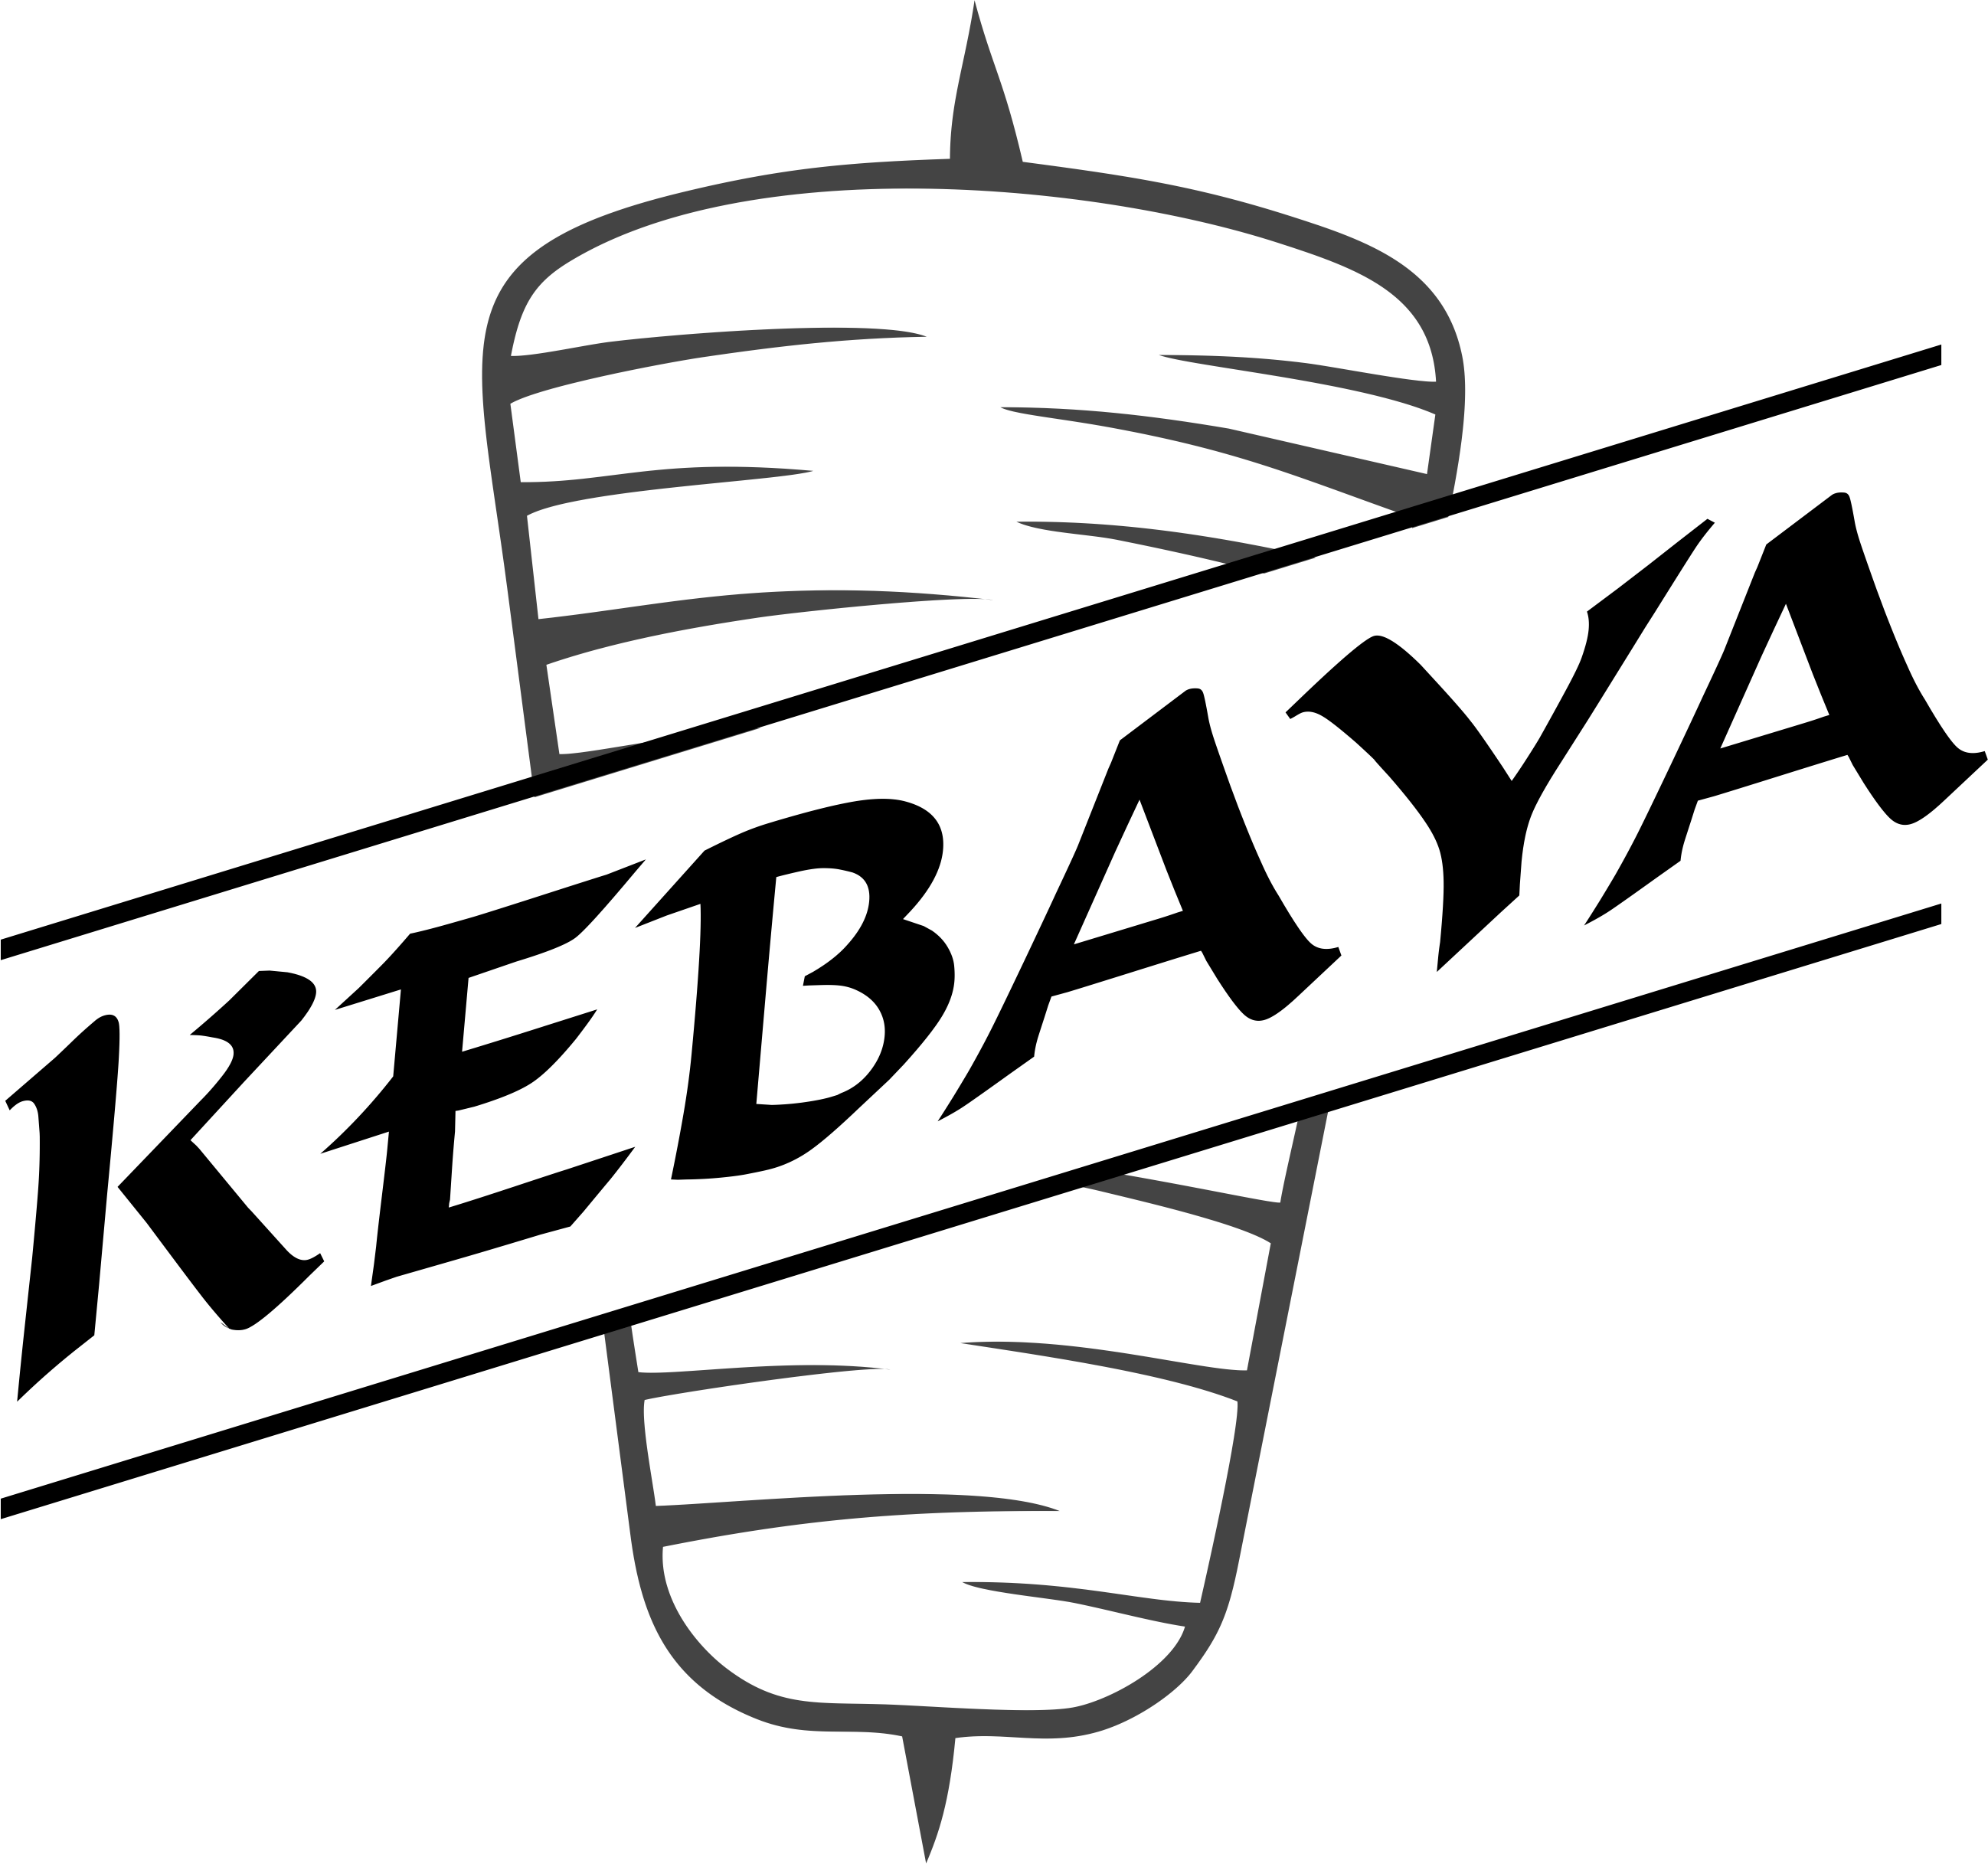 kebaya-logo-1.png